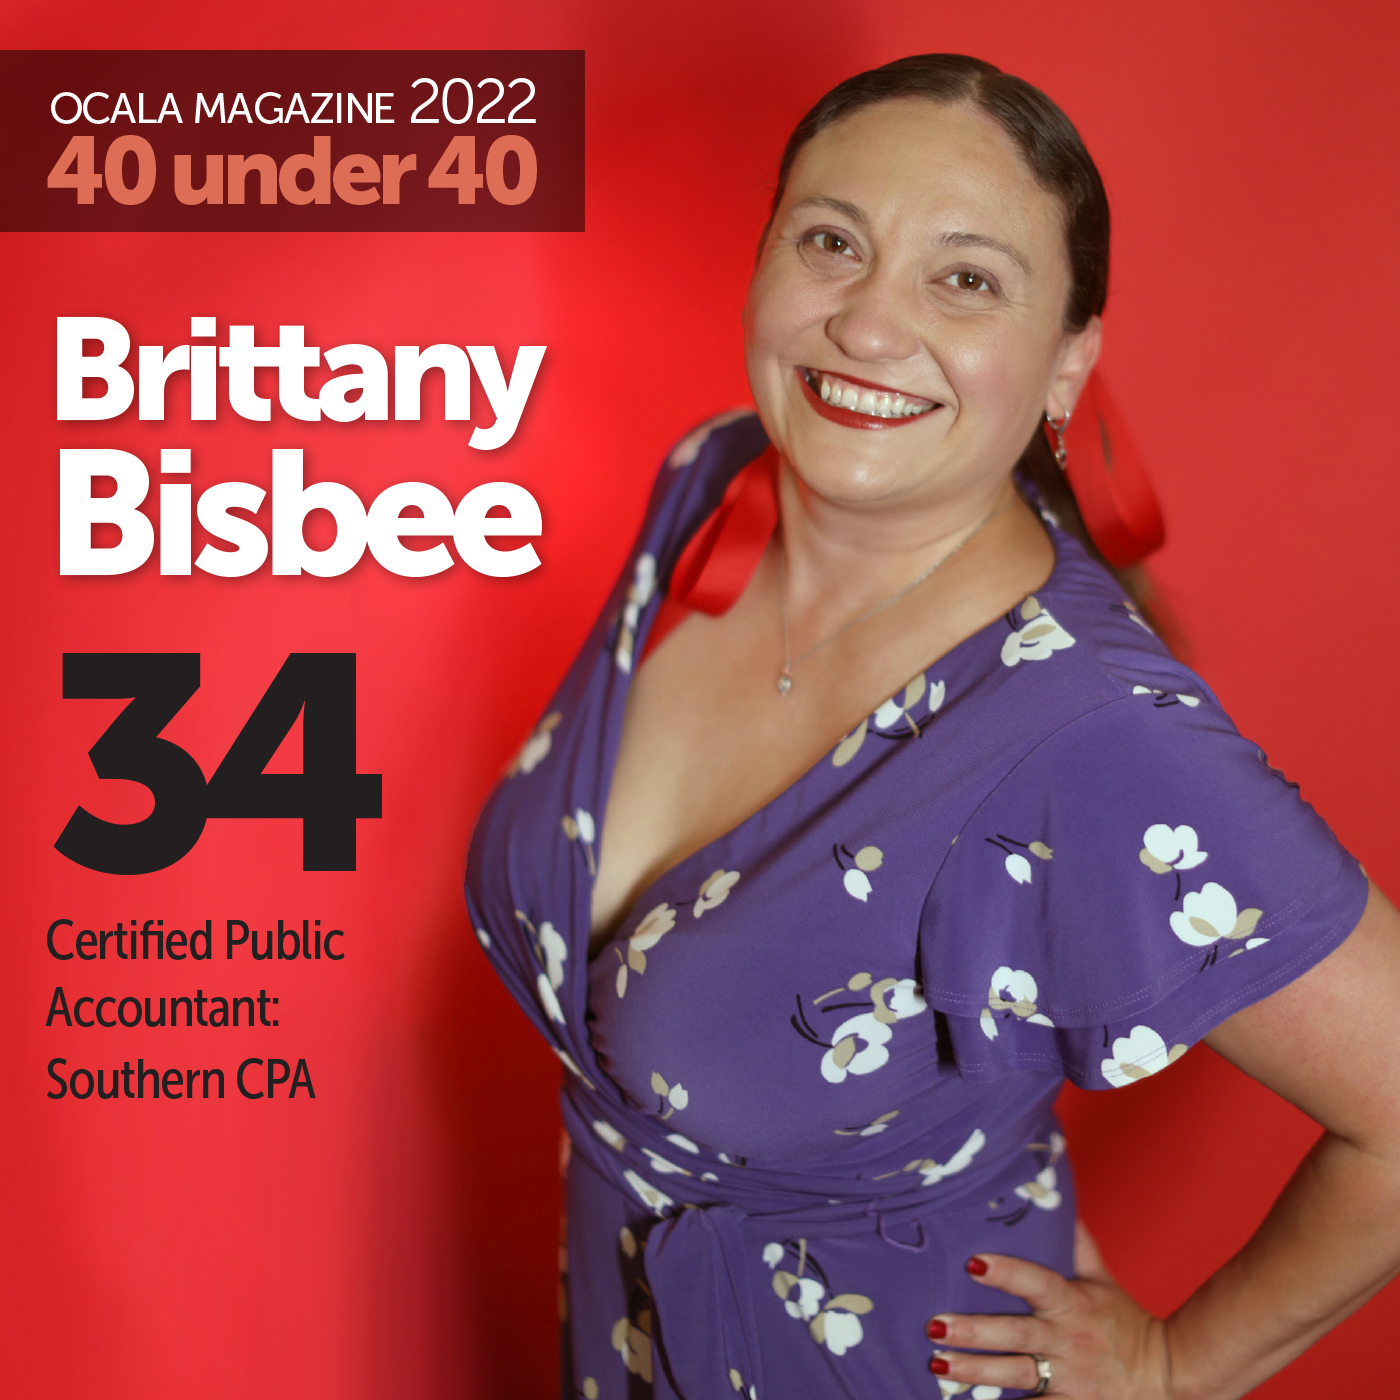 Brittany Bisbee Ocala Magazine 40 under 40